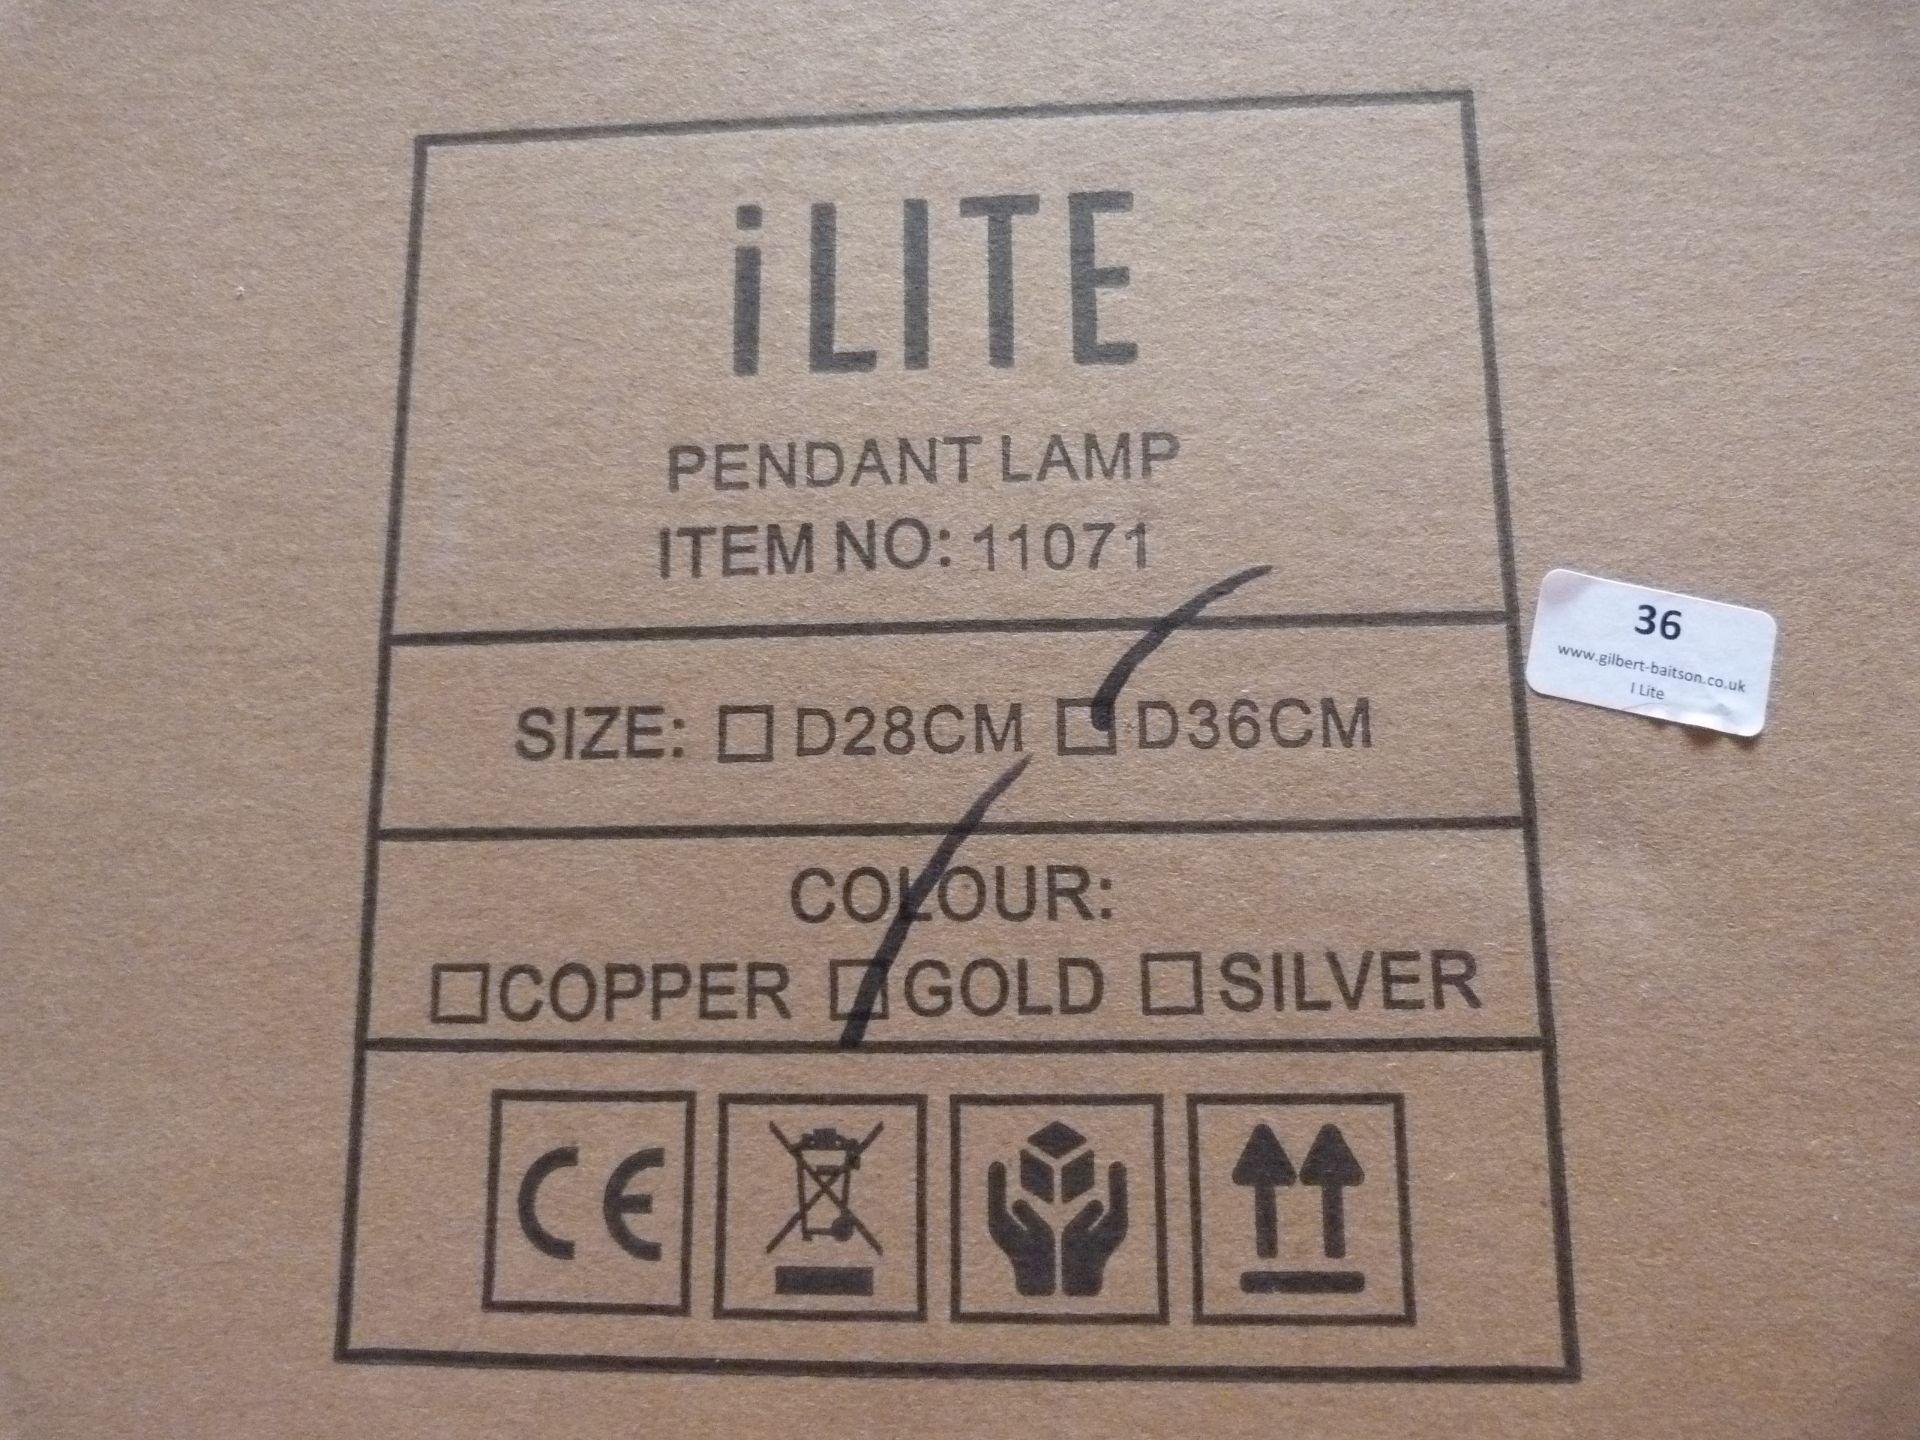 *36 ILite Pendant Lamps Item No.11071, Size: D36CM (gold) - Image 3 of 4